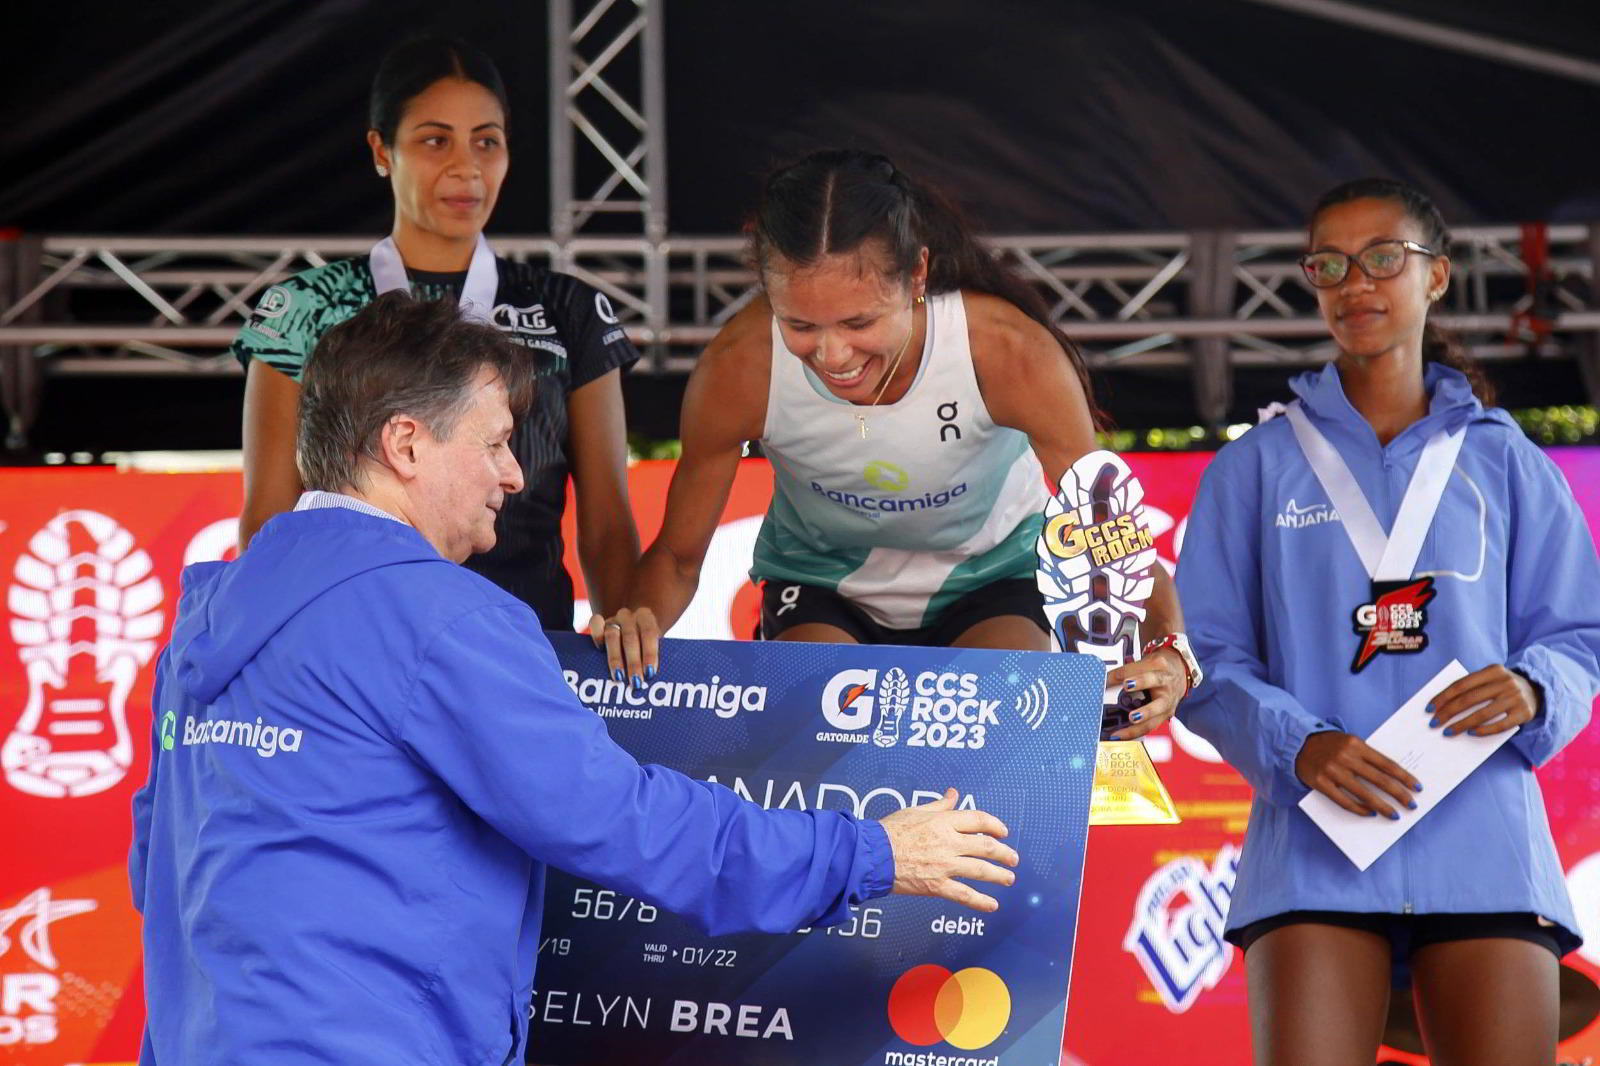 Atleta Bancamiga Joselyn Brea: en lo más alto del podio de Caracas Rock